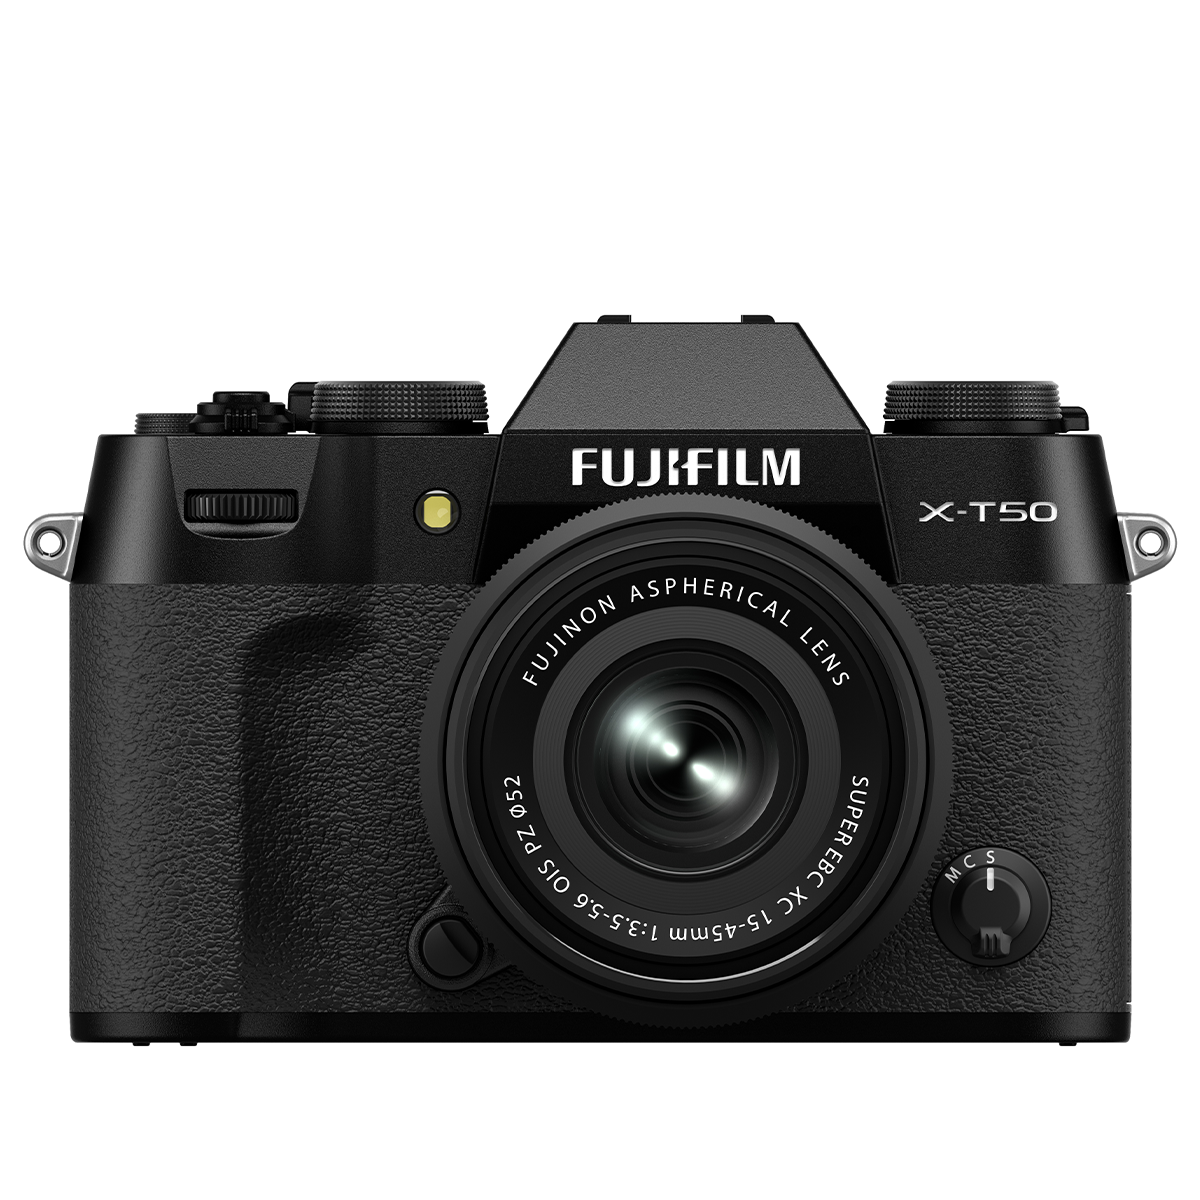 Fujifilm X-T50 on a white backgroun